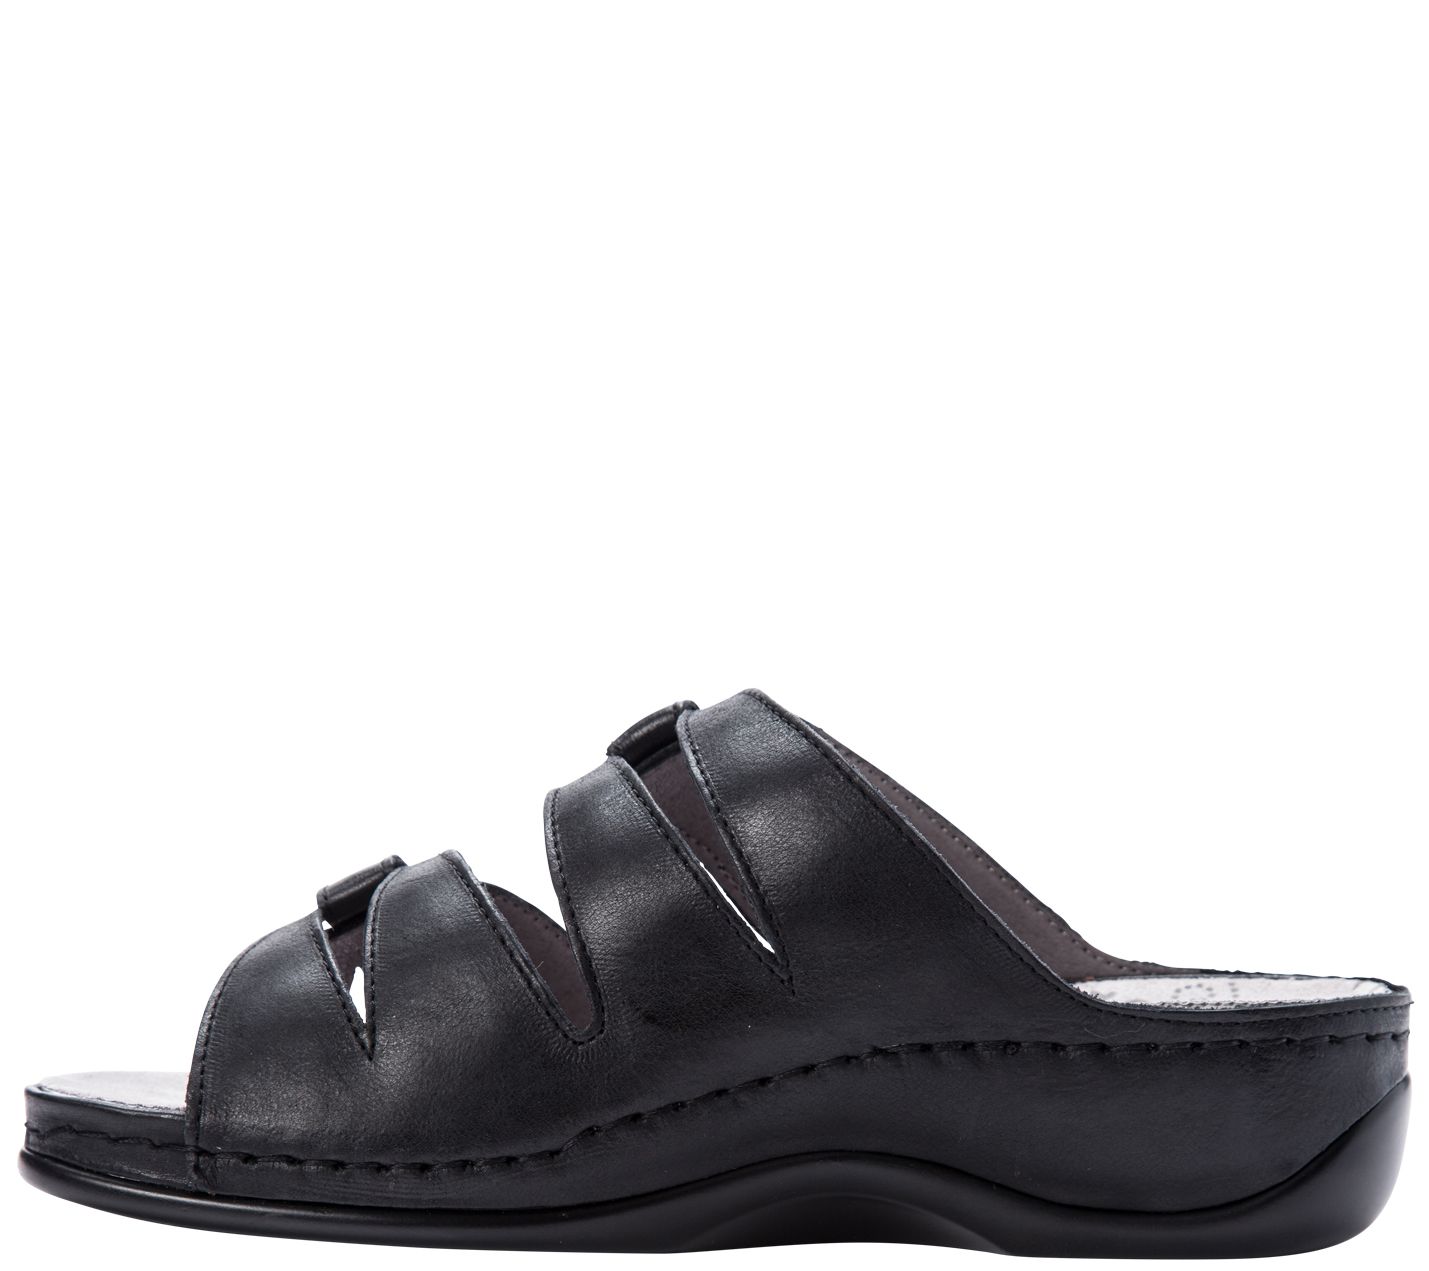 Propet Leather Slide Comfort Sandals - Kylie - QVC.com